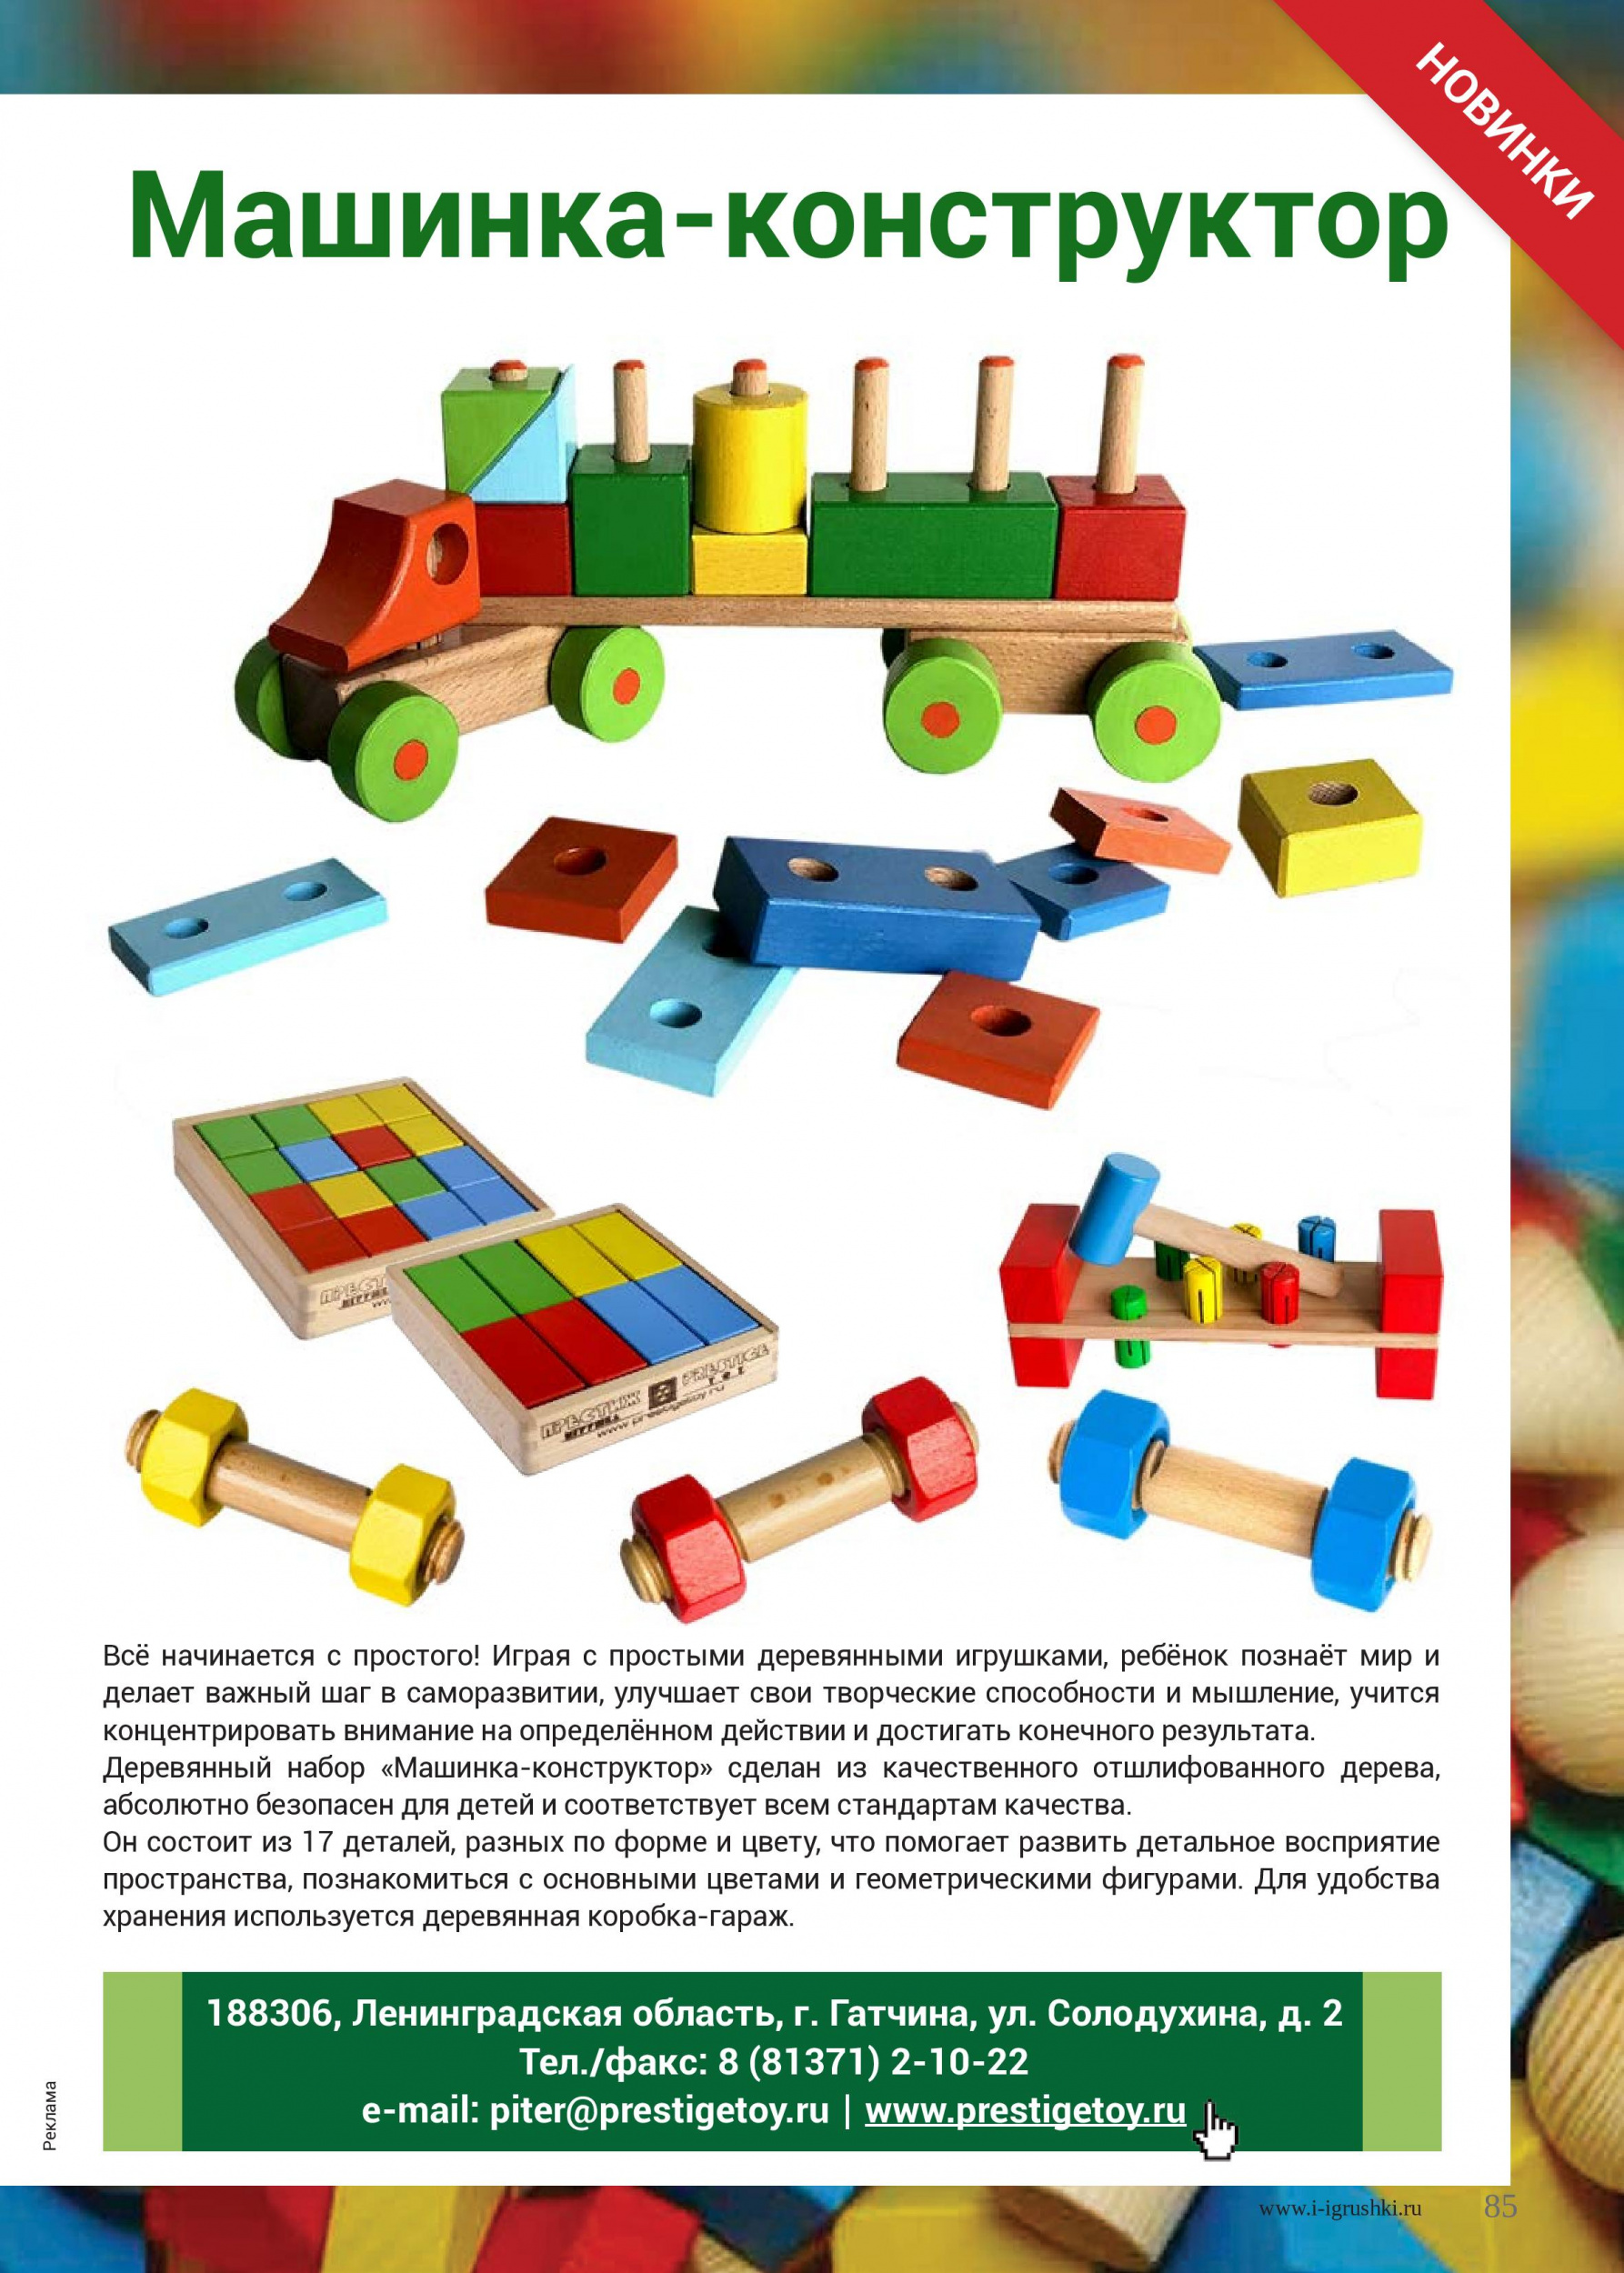 Отечественная производственная компания  по производству деревянной игрушки